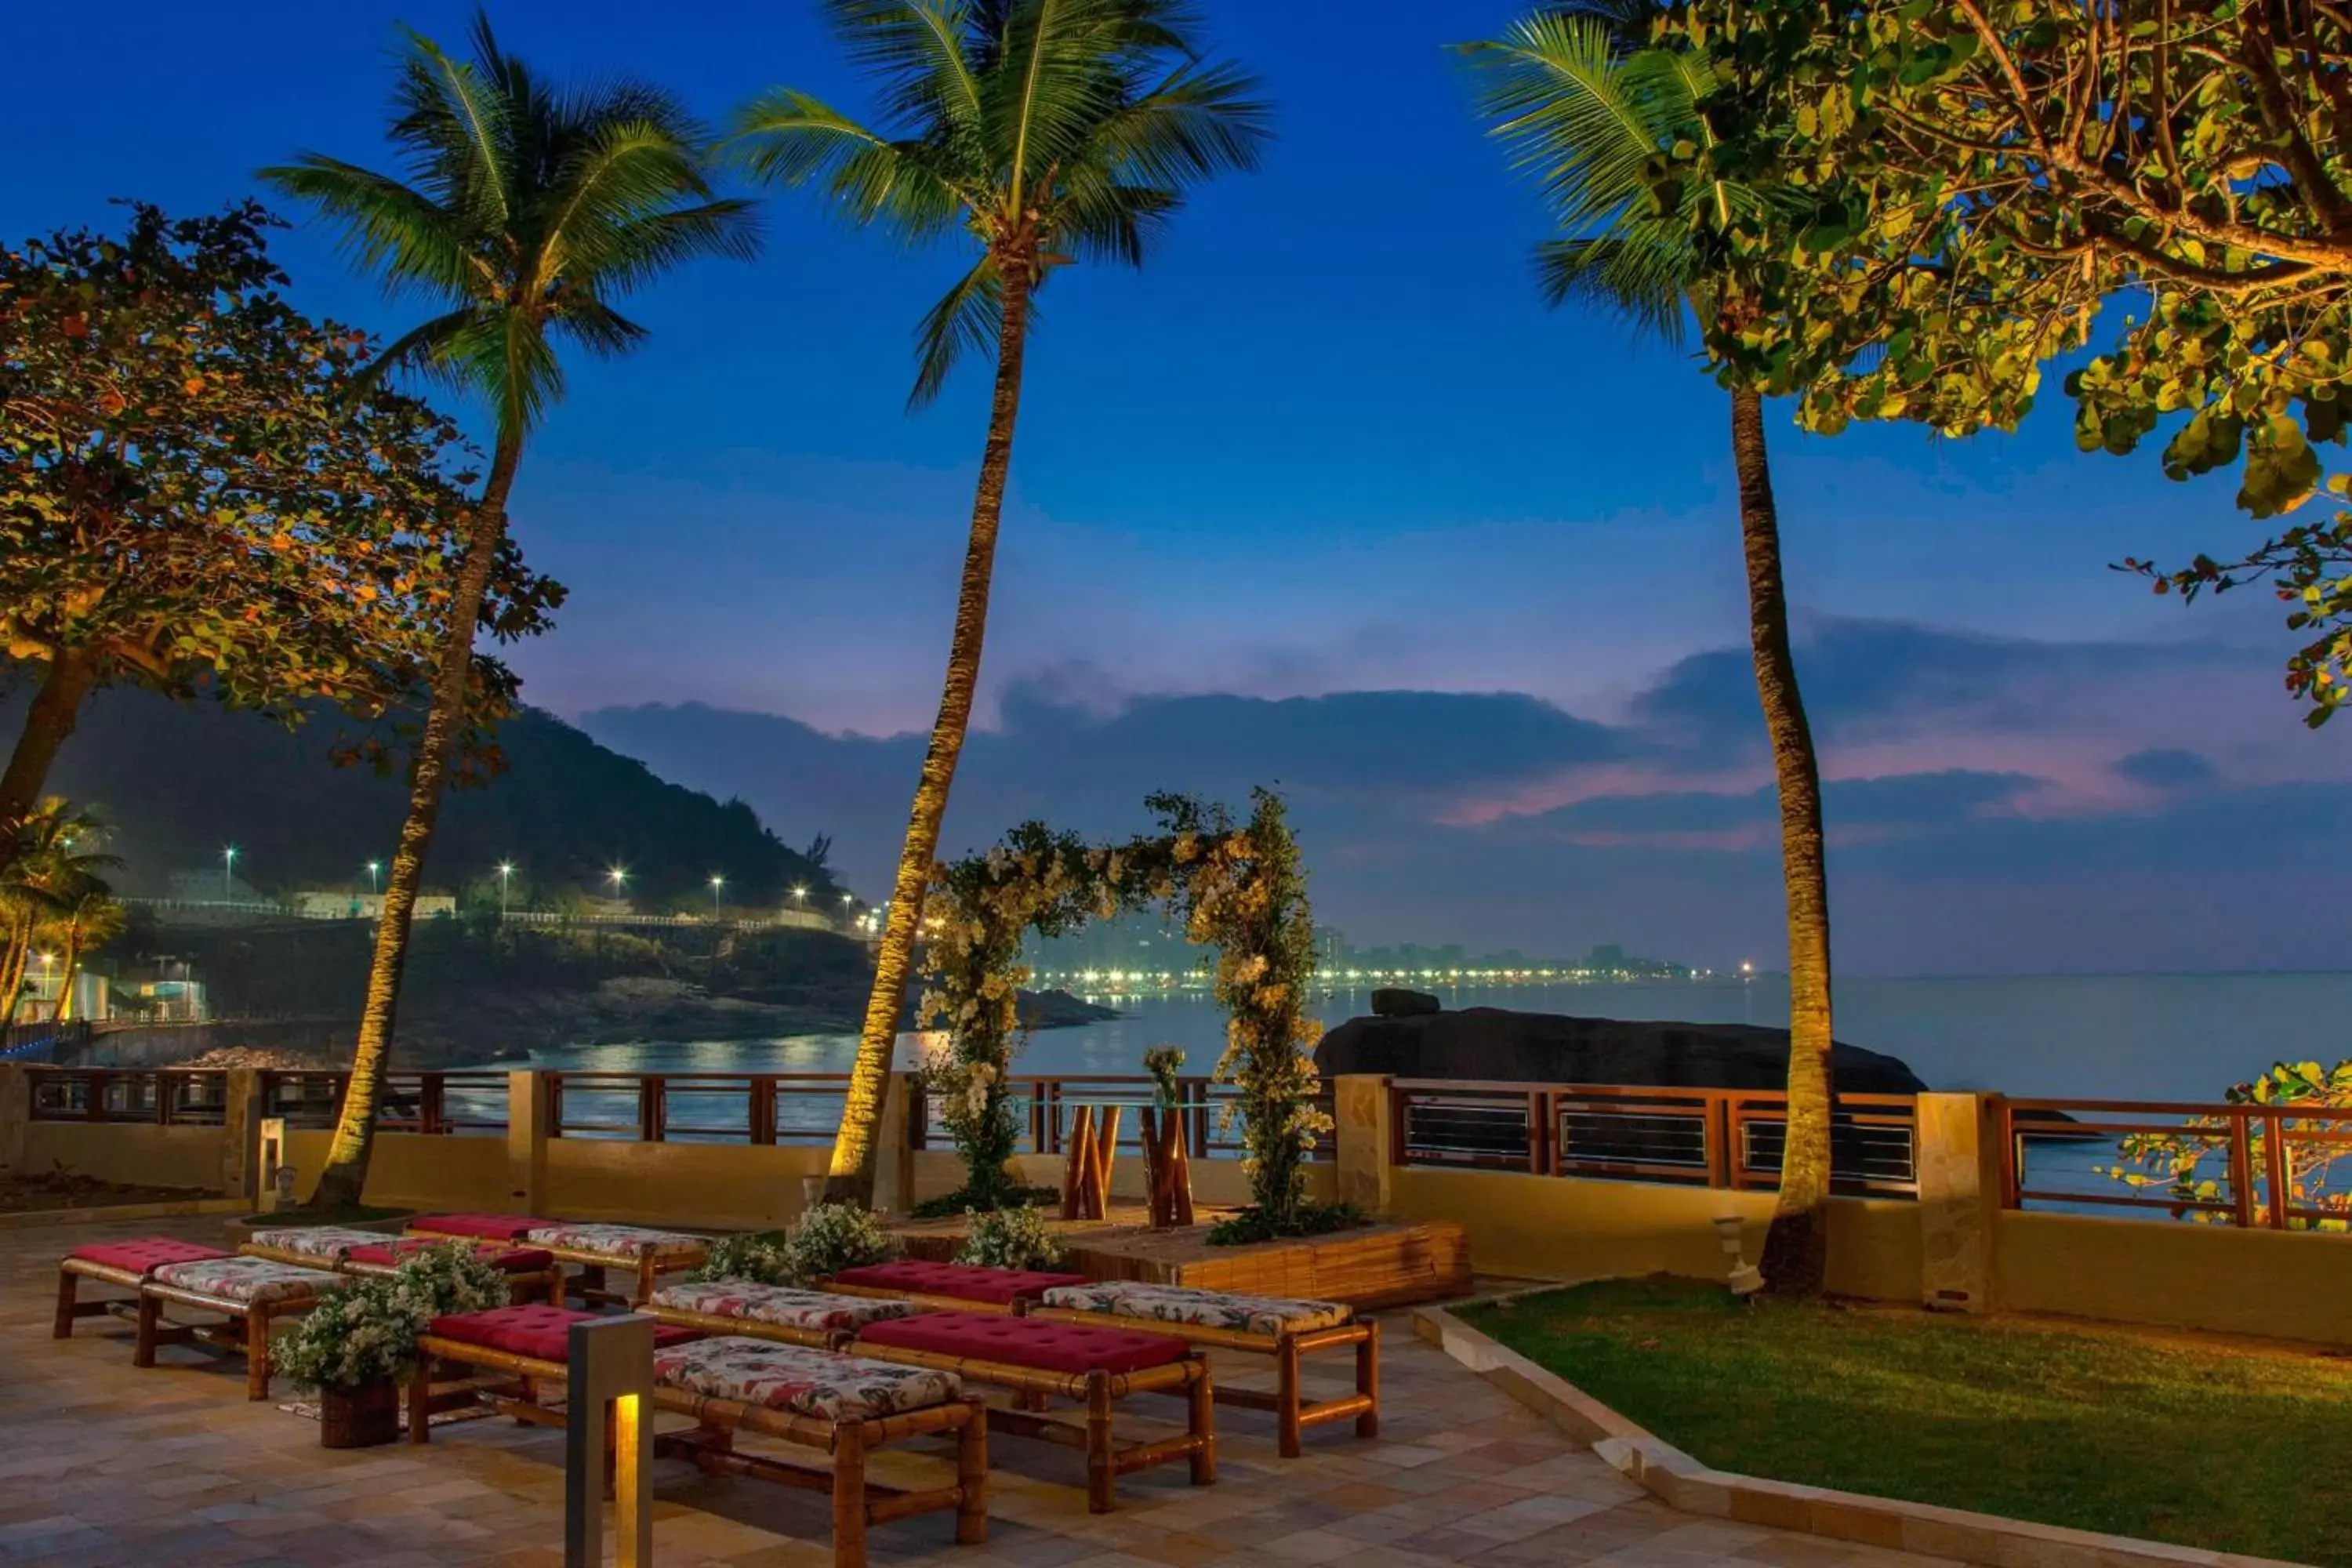 Lobby or reception in Sheraton Grand Rio Hotel & Resort